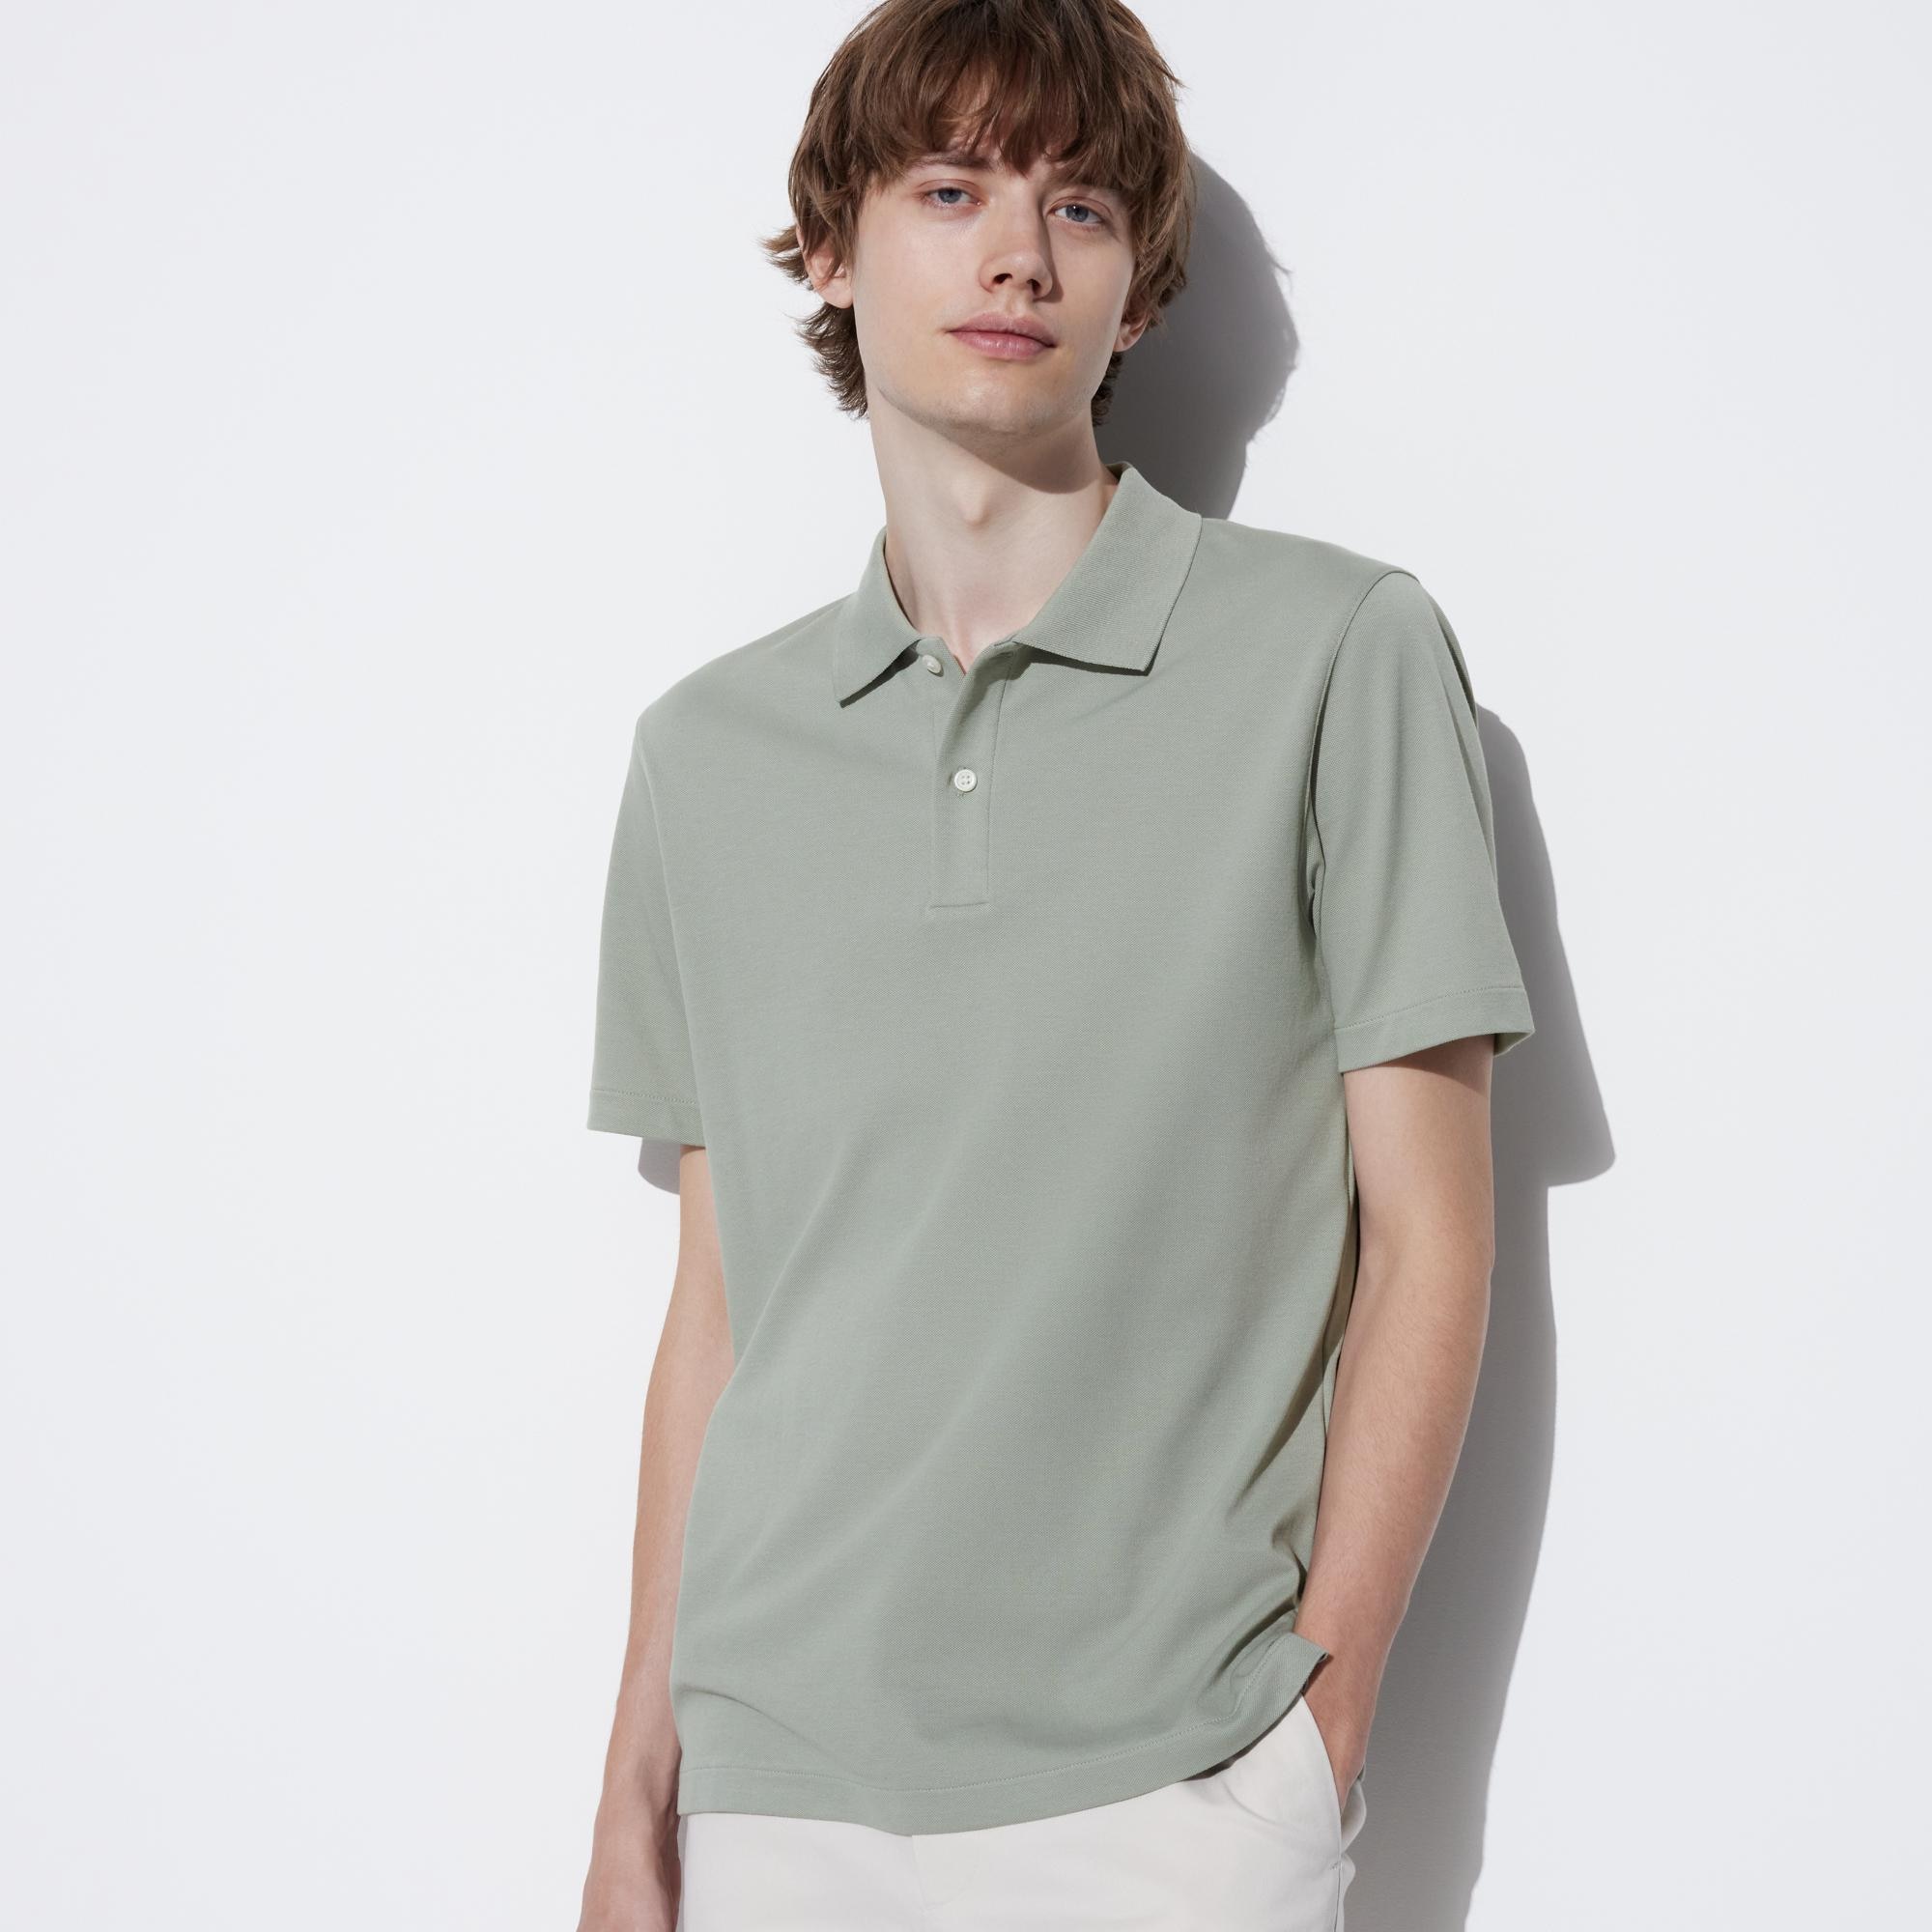 ポロシャツ ボーダー 緑の関連商品 | ユニクロ